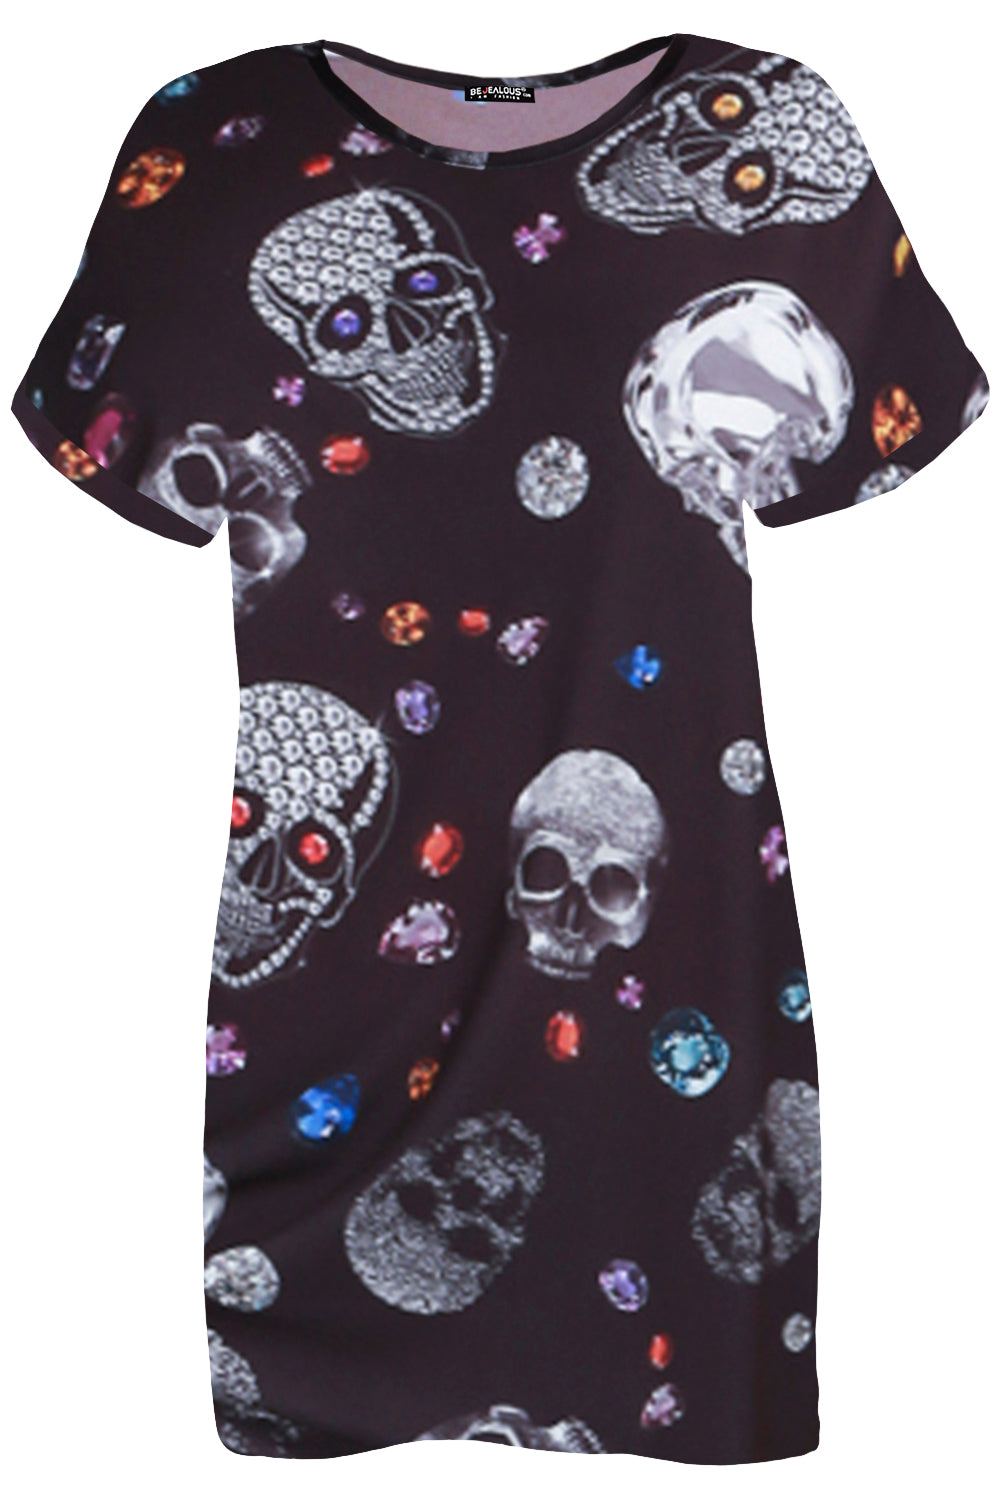 Short Sleeve Floral Skull Print Tshirt